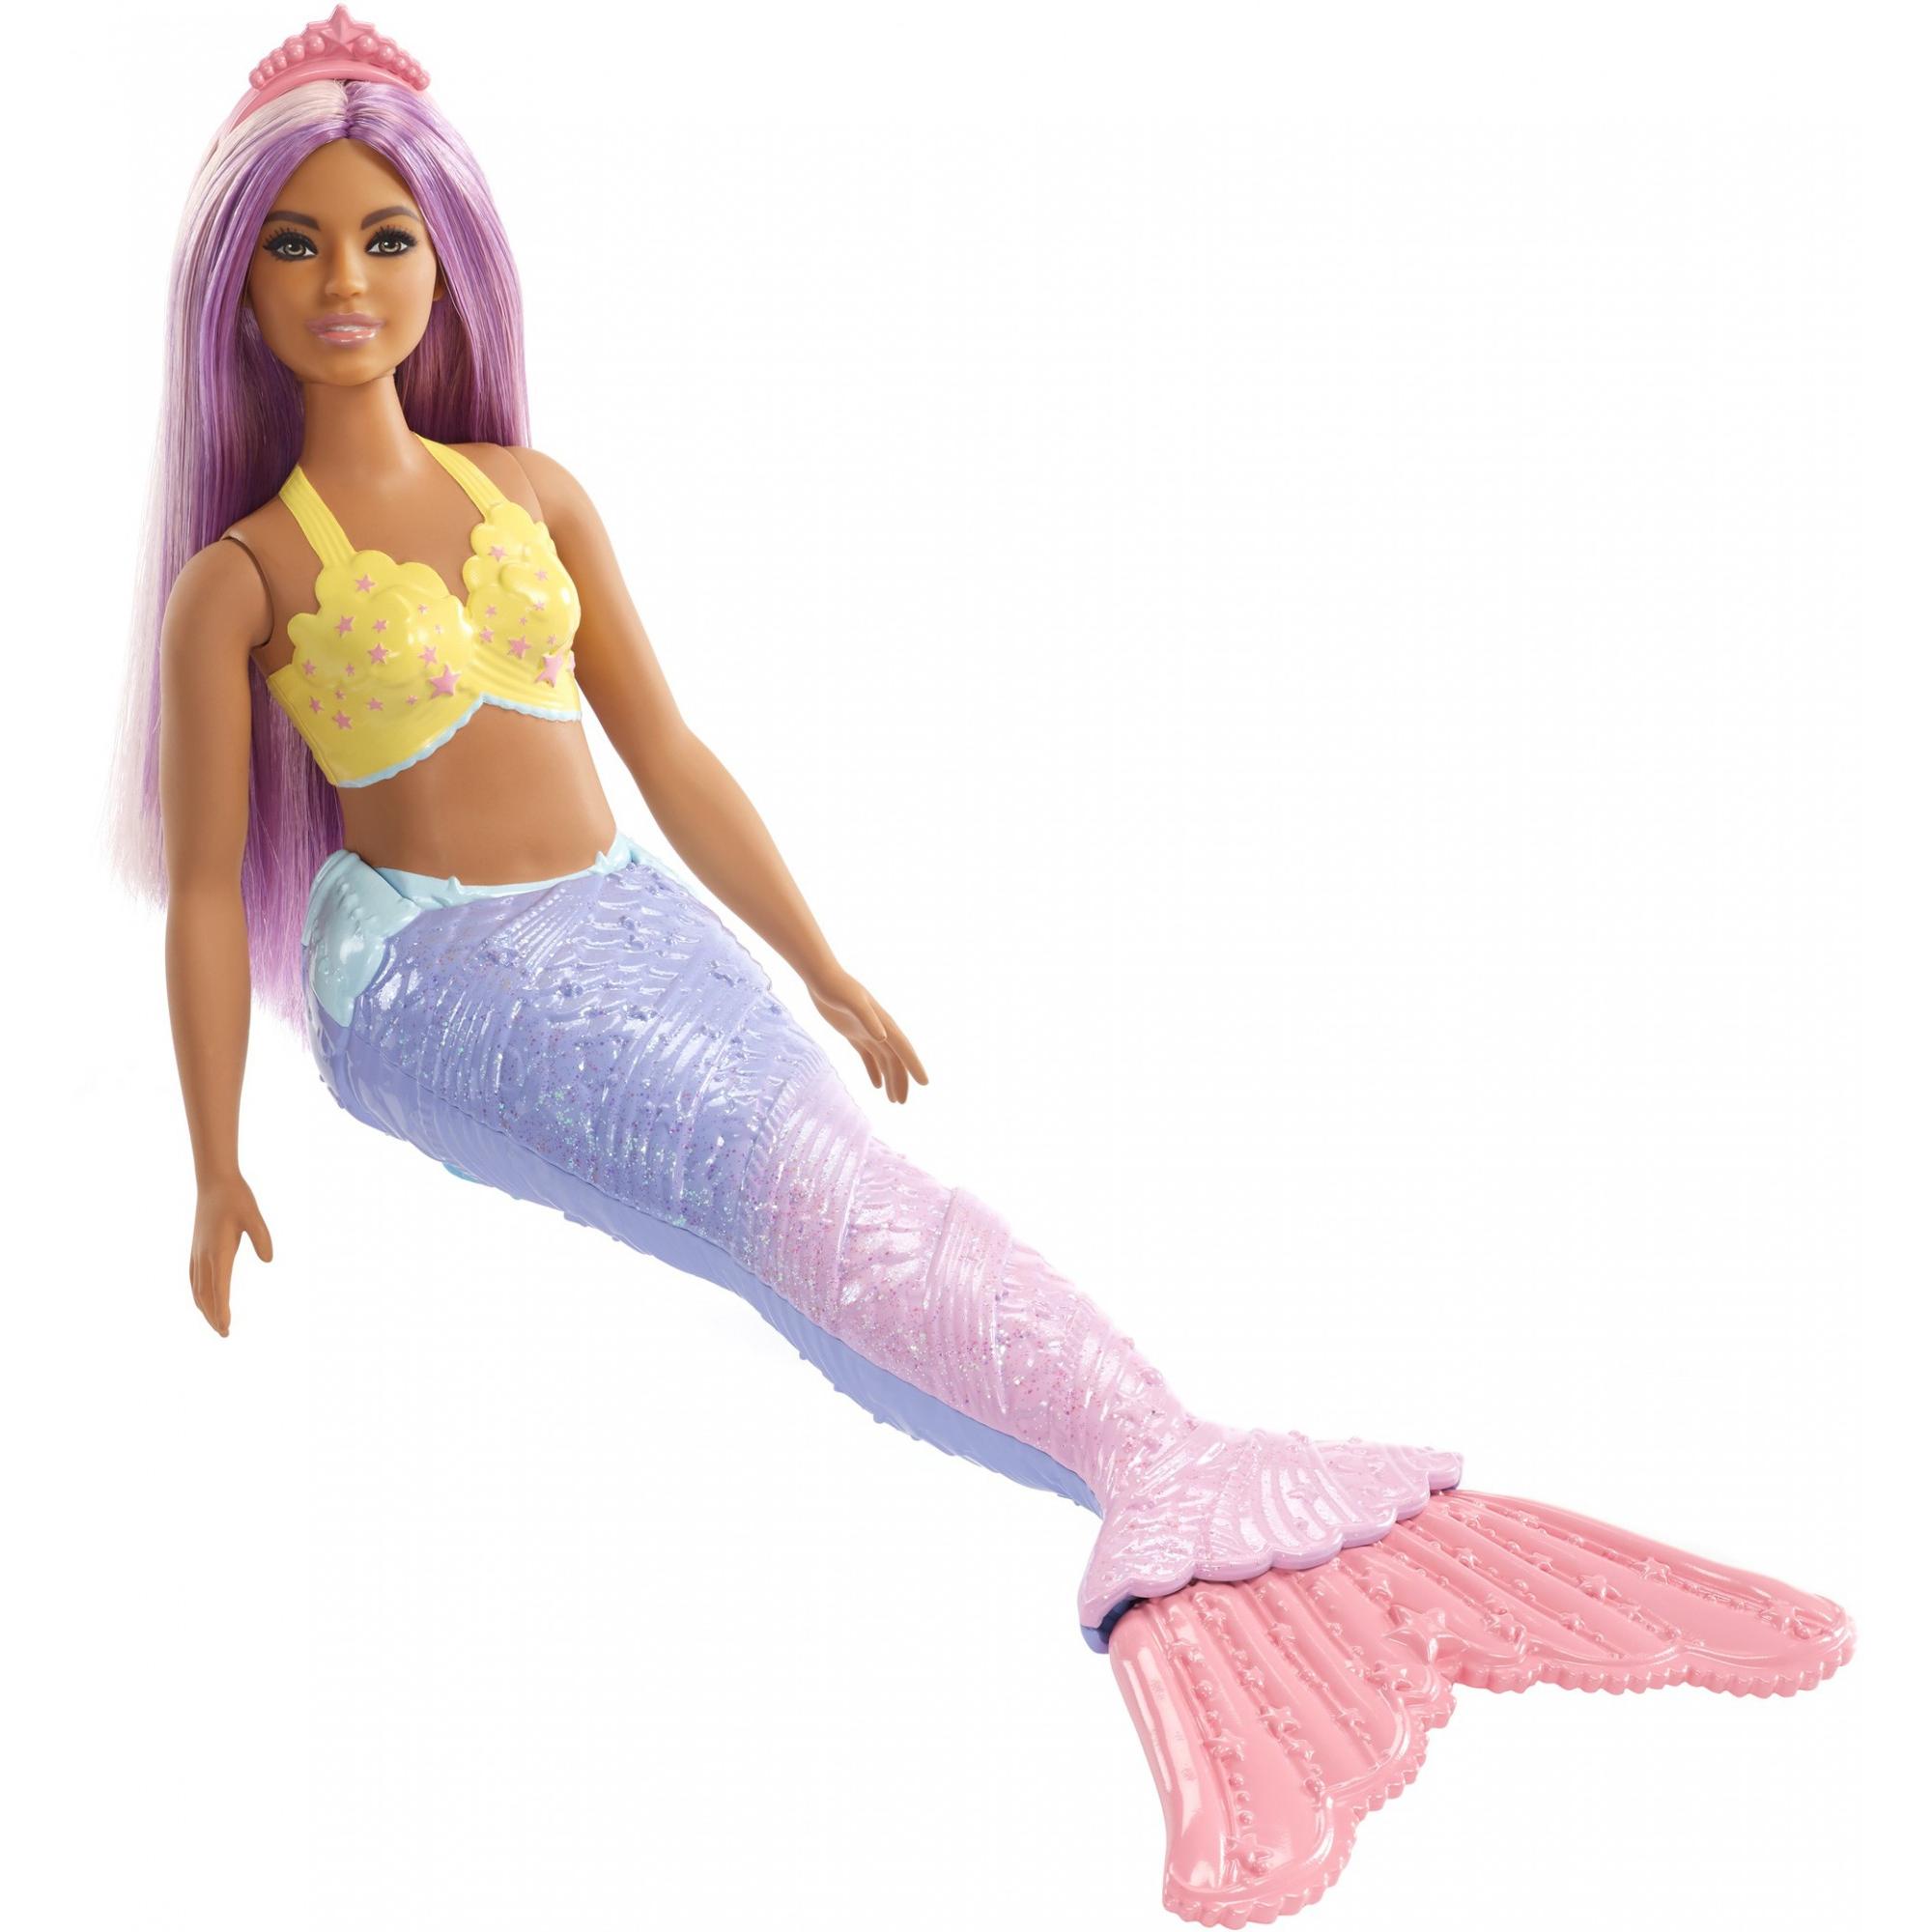 Barbie Dreamtopia Mermaid Doll with Long Purple Streaked Hair - image 2 of 8